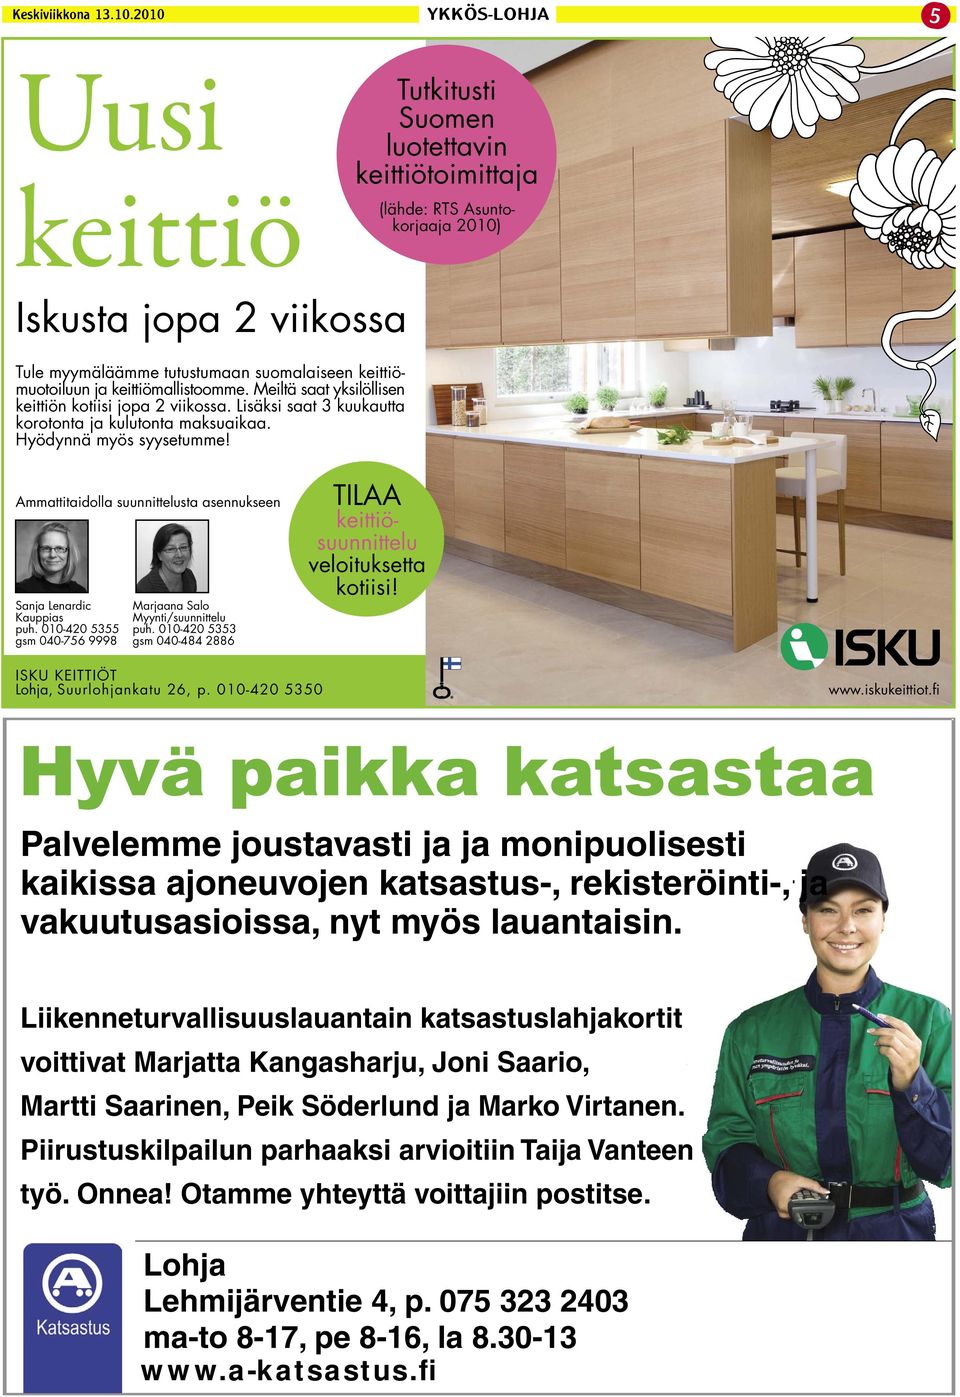 Tutkitusti Suomen luotettavin keittiötoimittaja (lähde: RTS Asuntokorjaaja 2010) Ammattitaidolla suunnittelusta asennukseen Sanja Lenardic Kauppias puh.